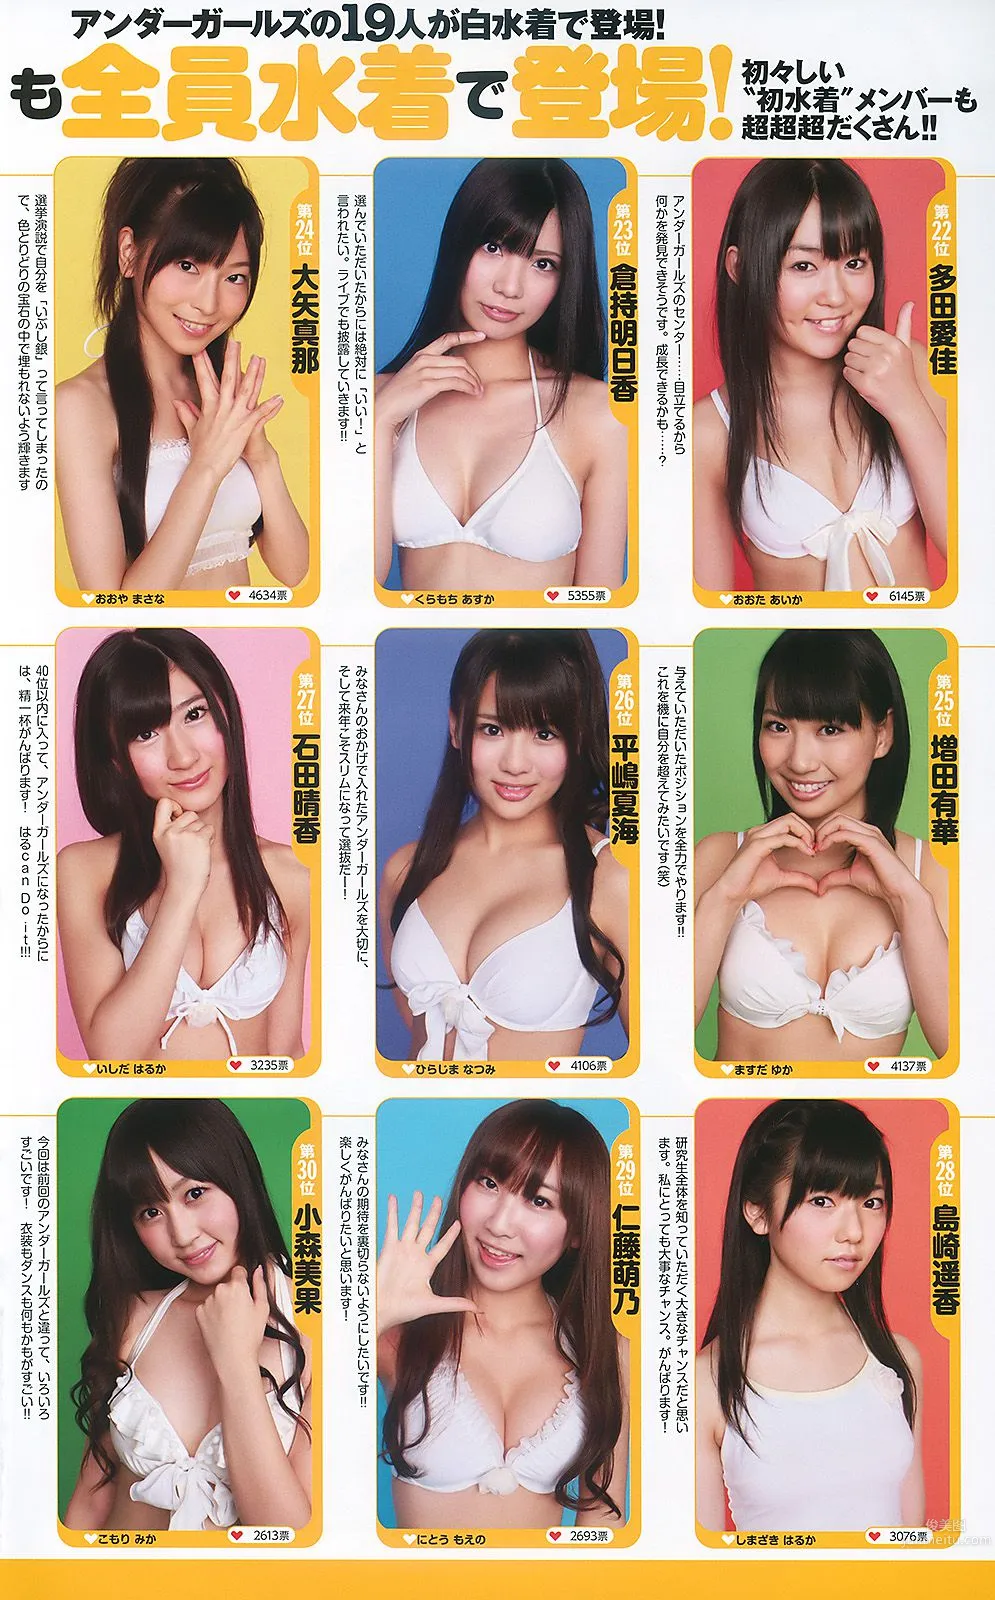 AKB48 次原かな 原幹恵 三原勇希 倉科カナ [Weekly Playboy] 2010年No.39 写真杂志36